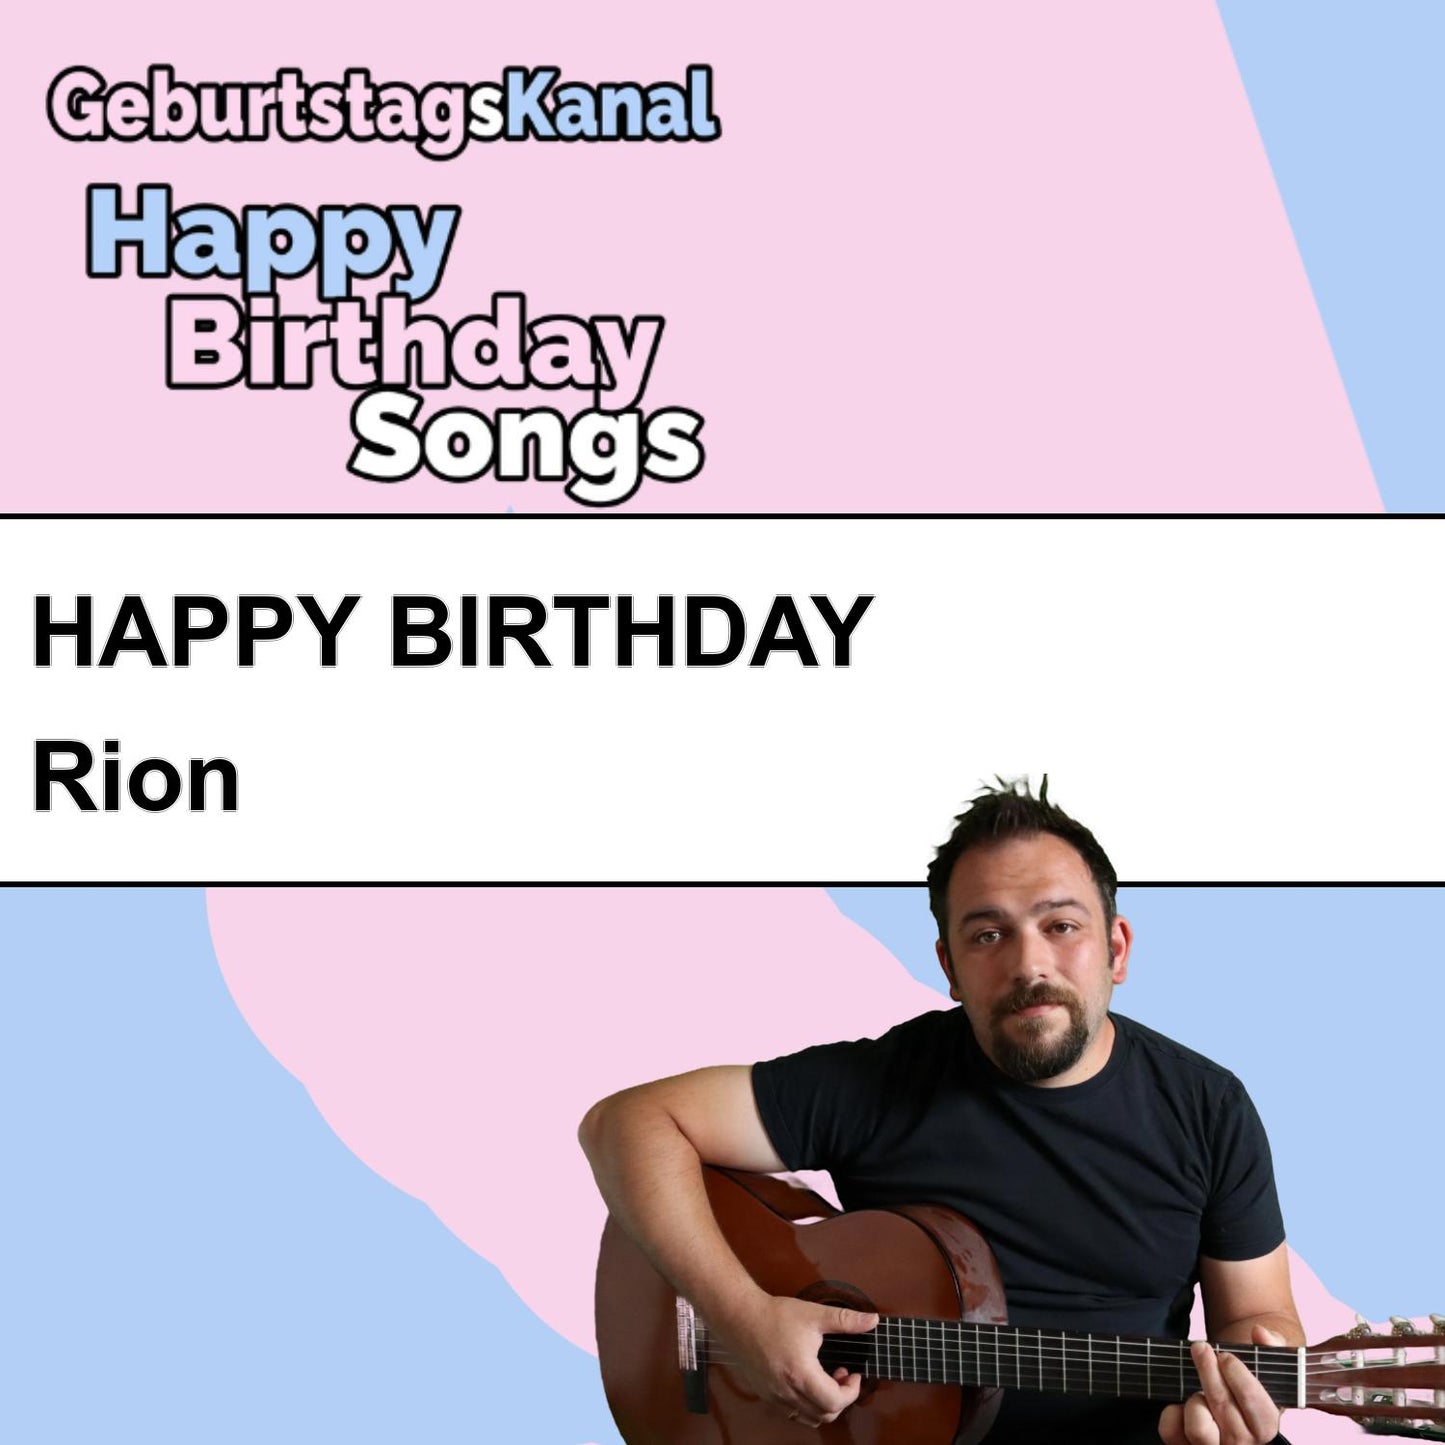 Produktbild Happy Birthday to you Rion mit Wunschgrußbotschaft